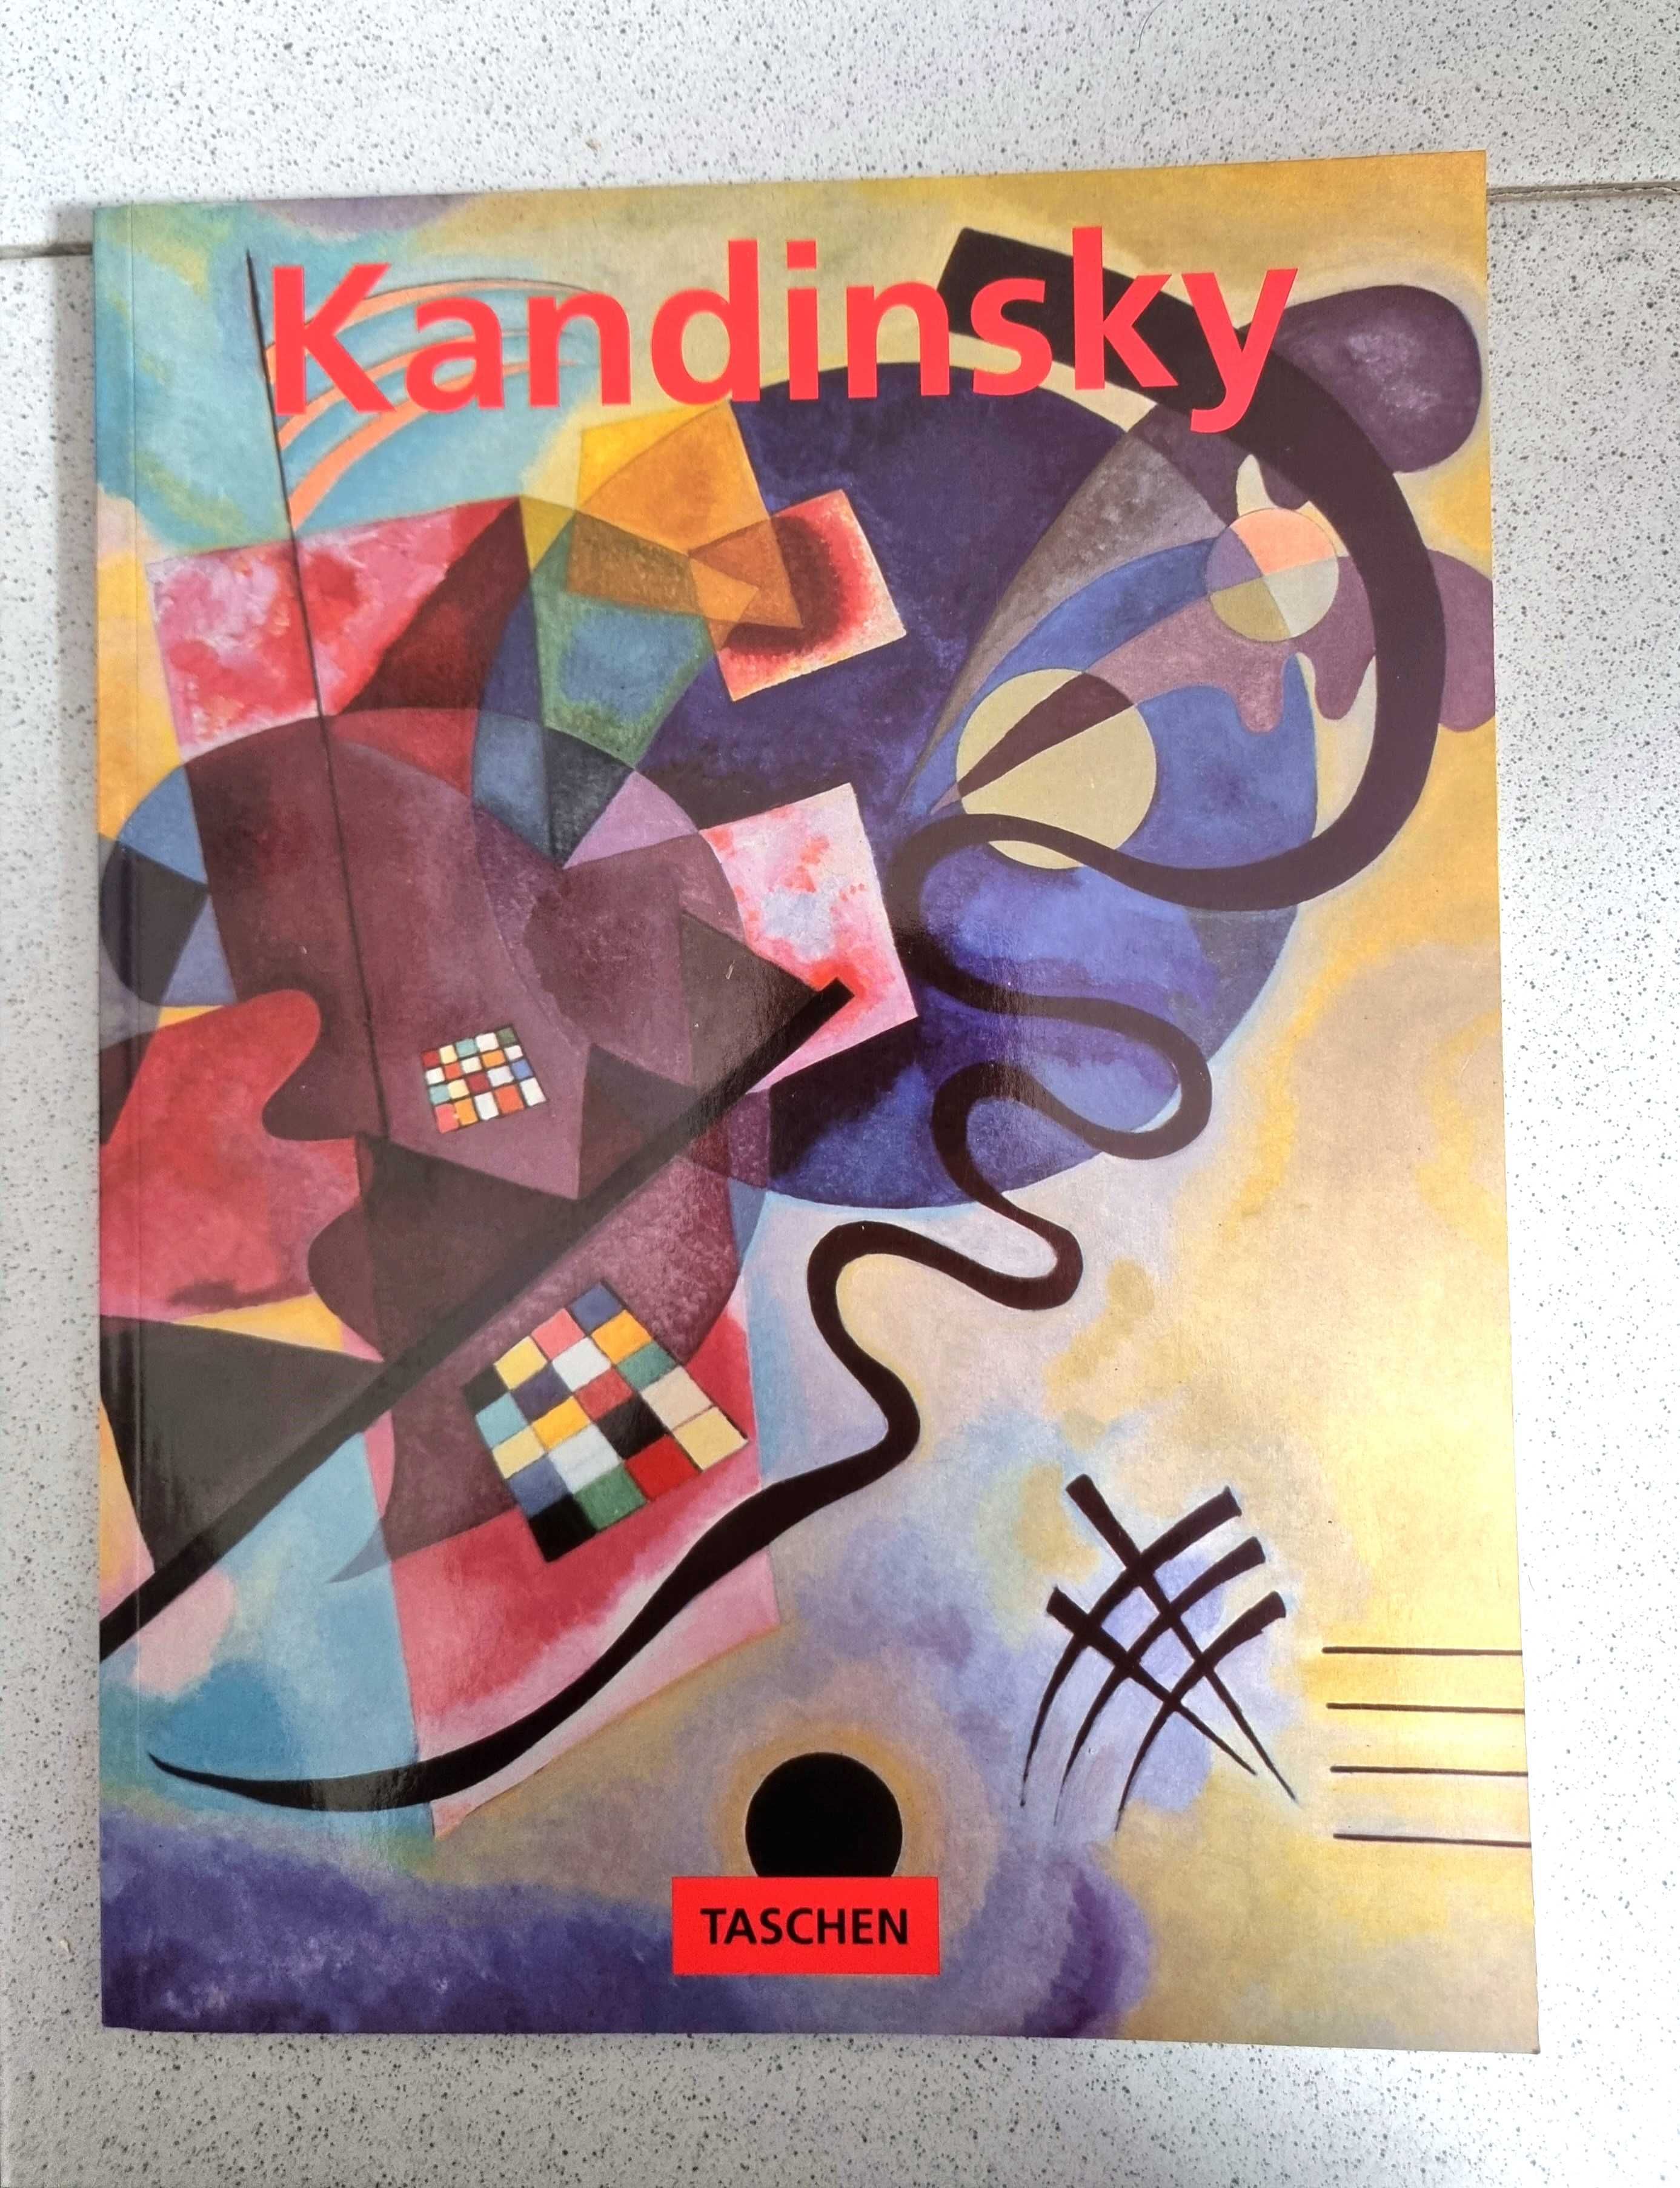 Livro "Kandinsky"